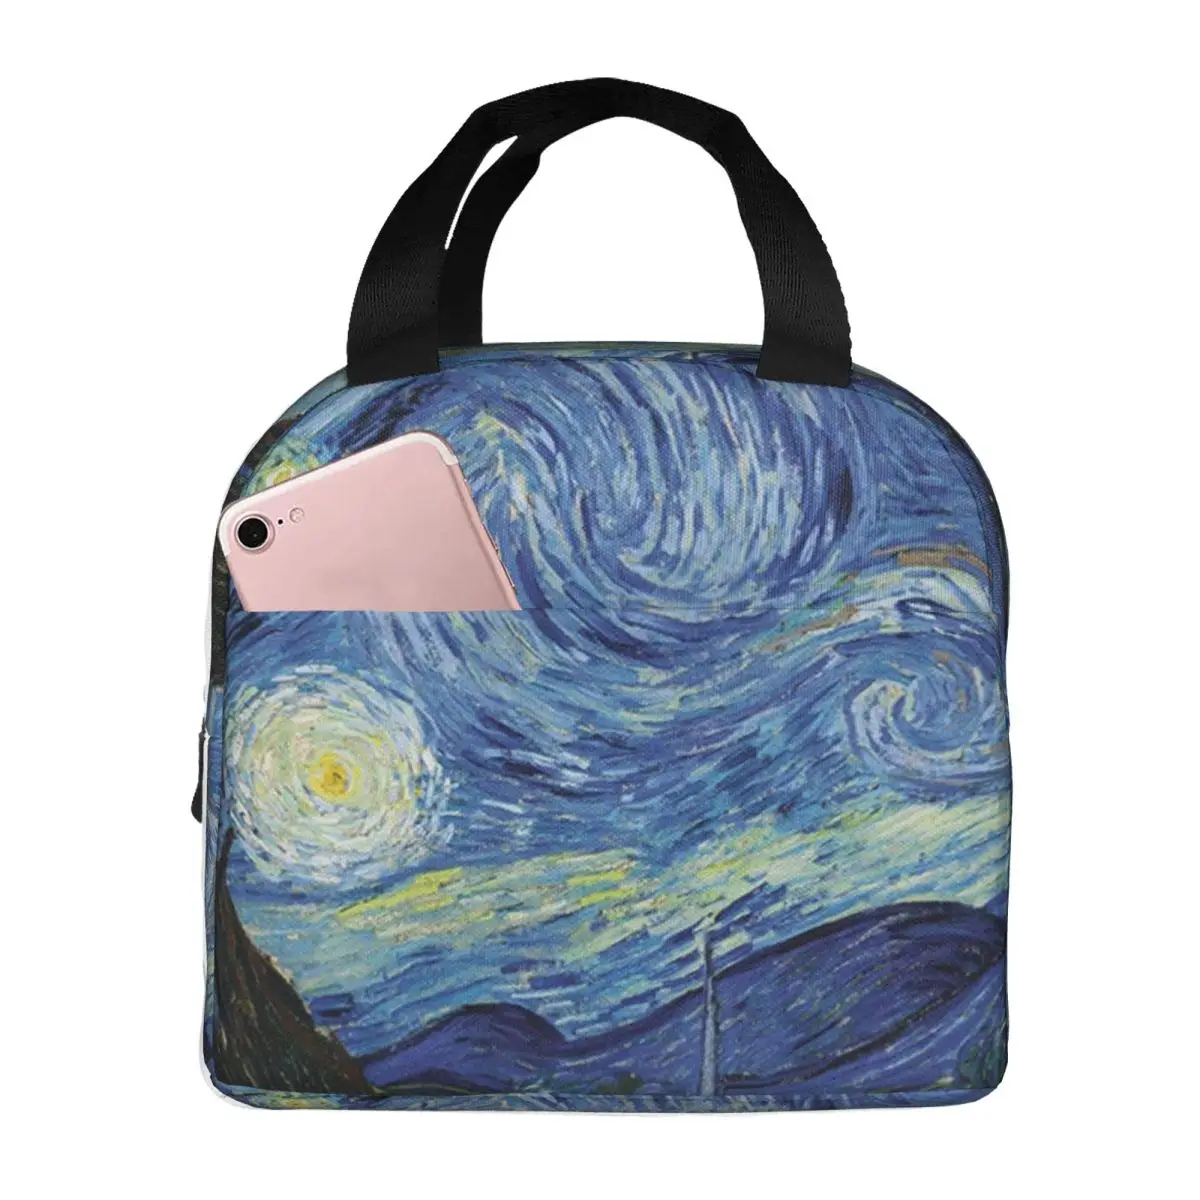 Starry-Night Портативная изолированная оксфордская сумка для ланча Многоразовый ланч-бокс Органайзер для обеда Термокулер Большая сумка